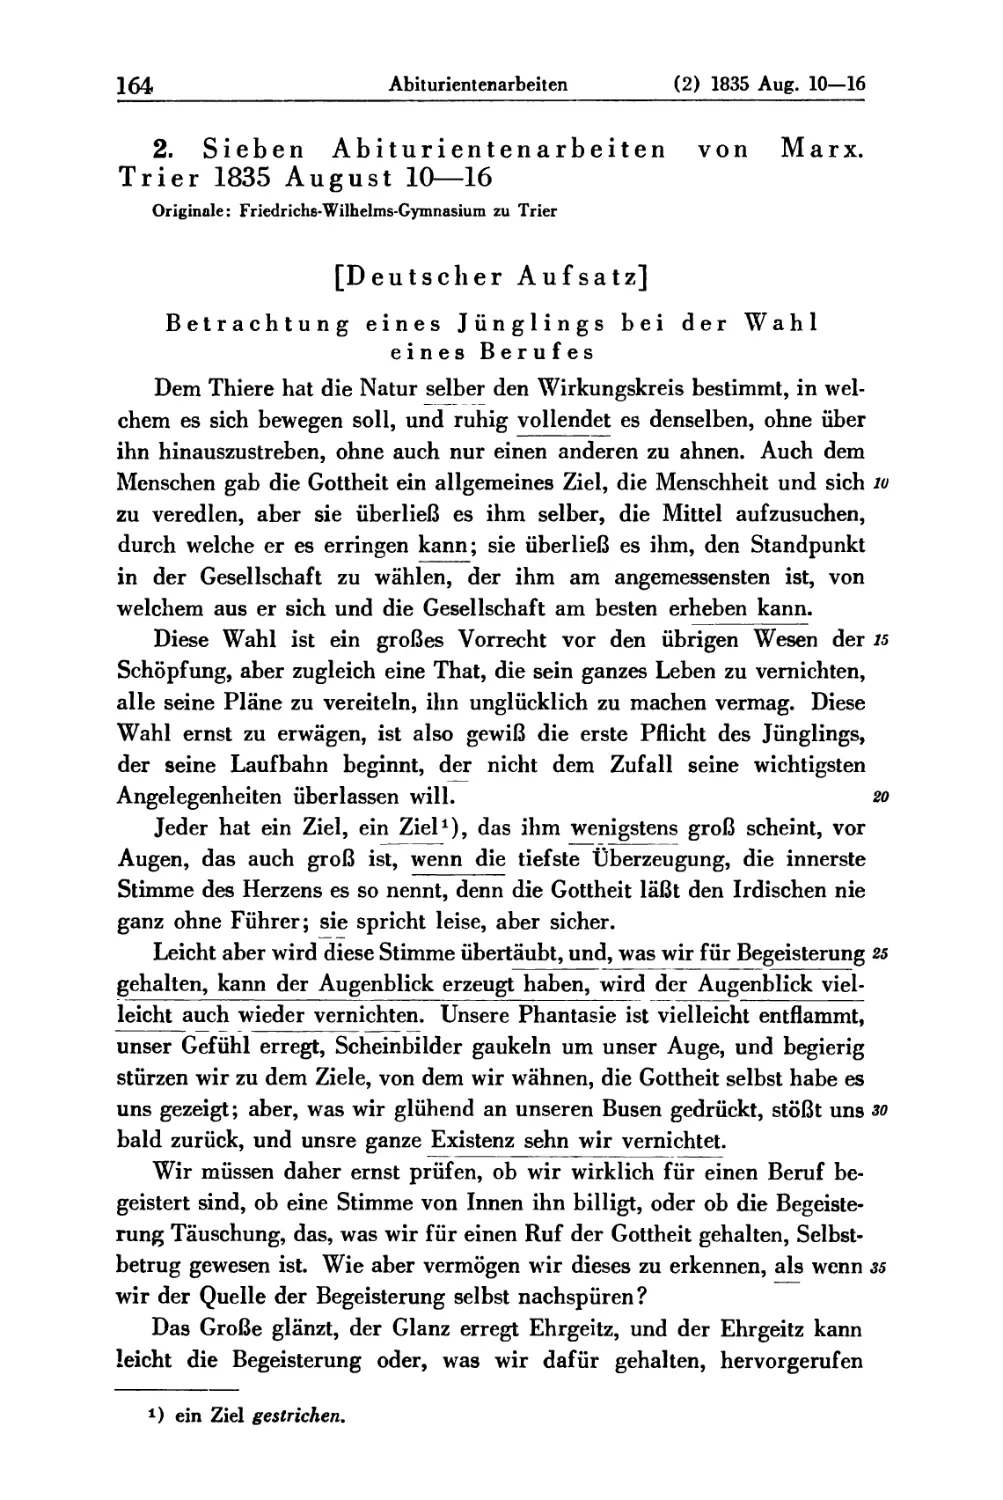 2. Sieben Abiturientenarbeiten von Marx. Trier 1835 August 10—16